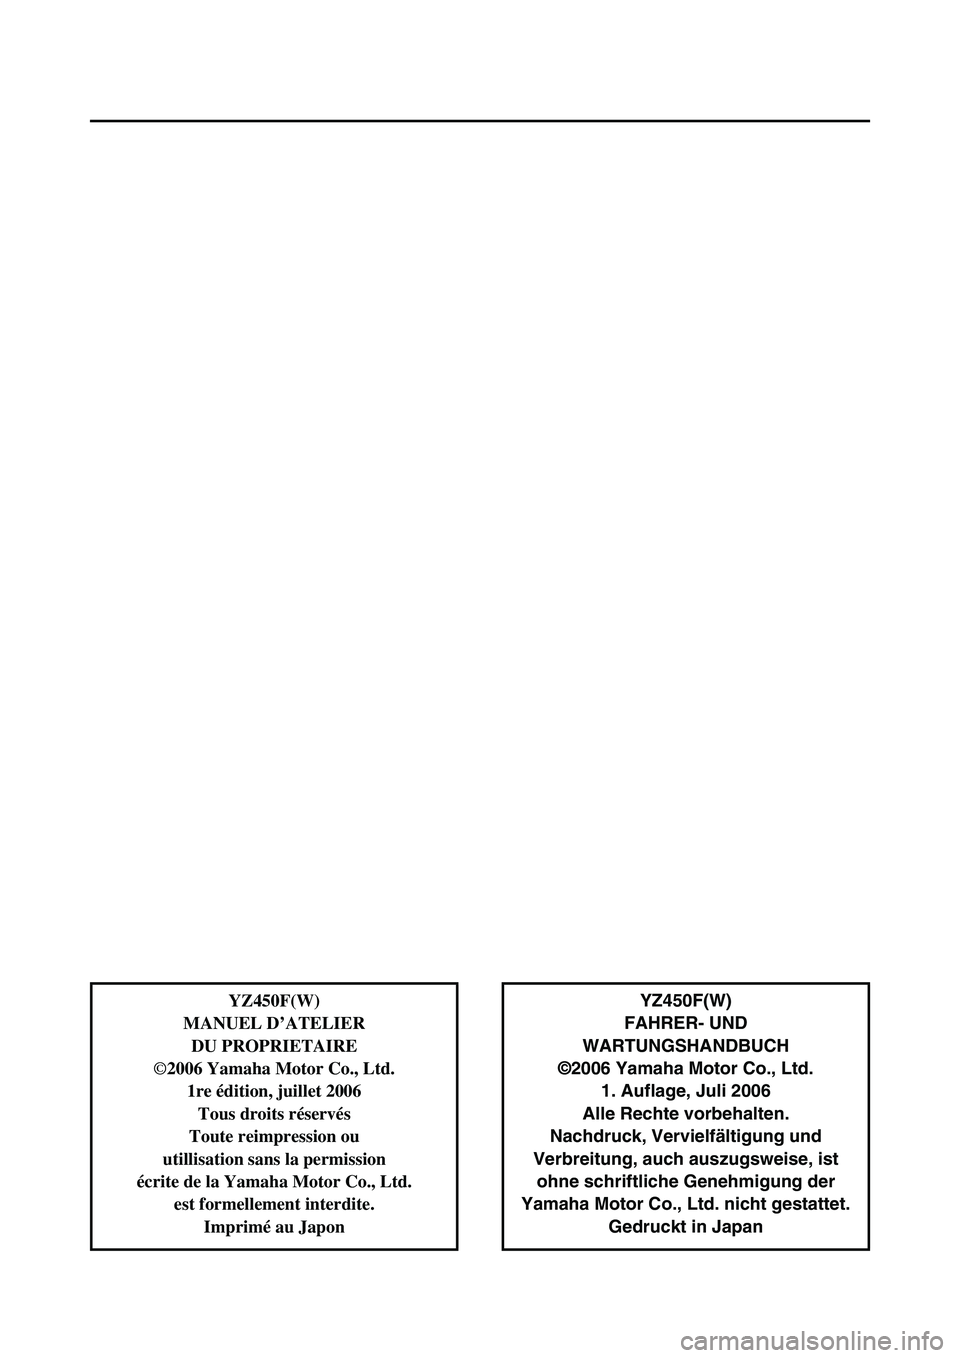 YAMAHA YZ450F 2007  Betriebsanleitungen (in German) YZ450F(W)
FAHRER- UND 
WARTUNGSHANDBUCH
©2006 Yamaha Motor Co., Ltd.
1. Auflage, Juli 2006
Alle Rechte vorbehalten.
Nachdruck, Vervielfältigung und
Verbreitung, auch auszugsweise, ist
ohne schriftli